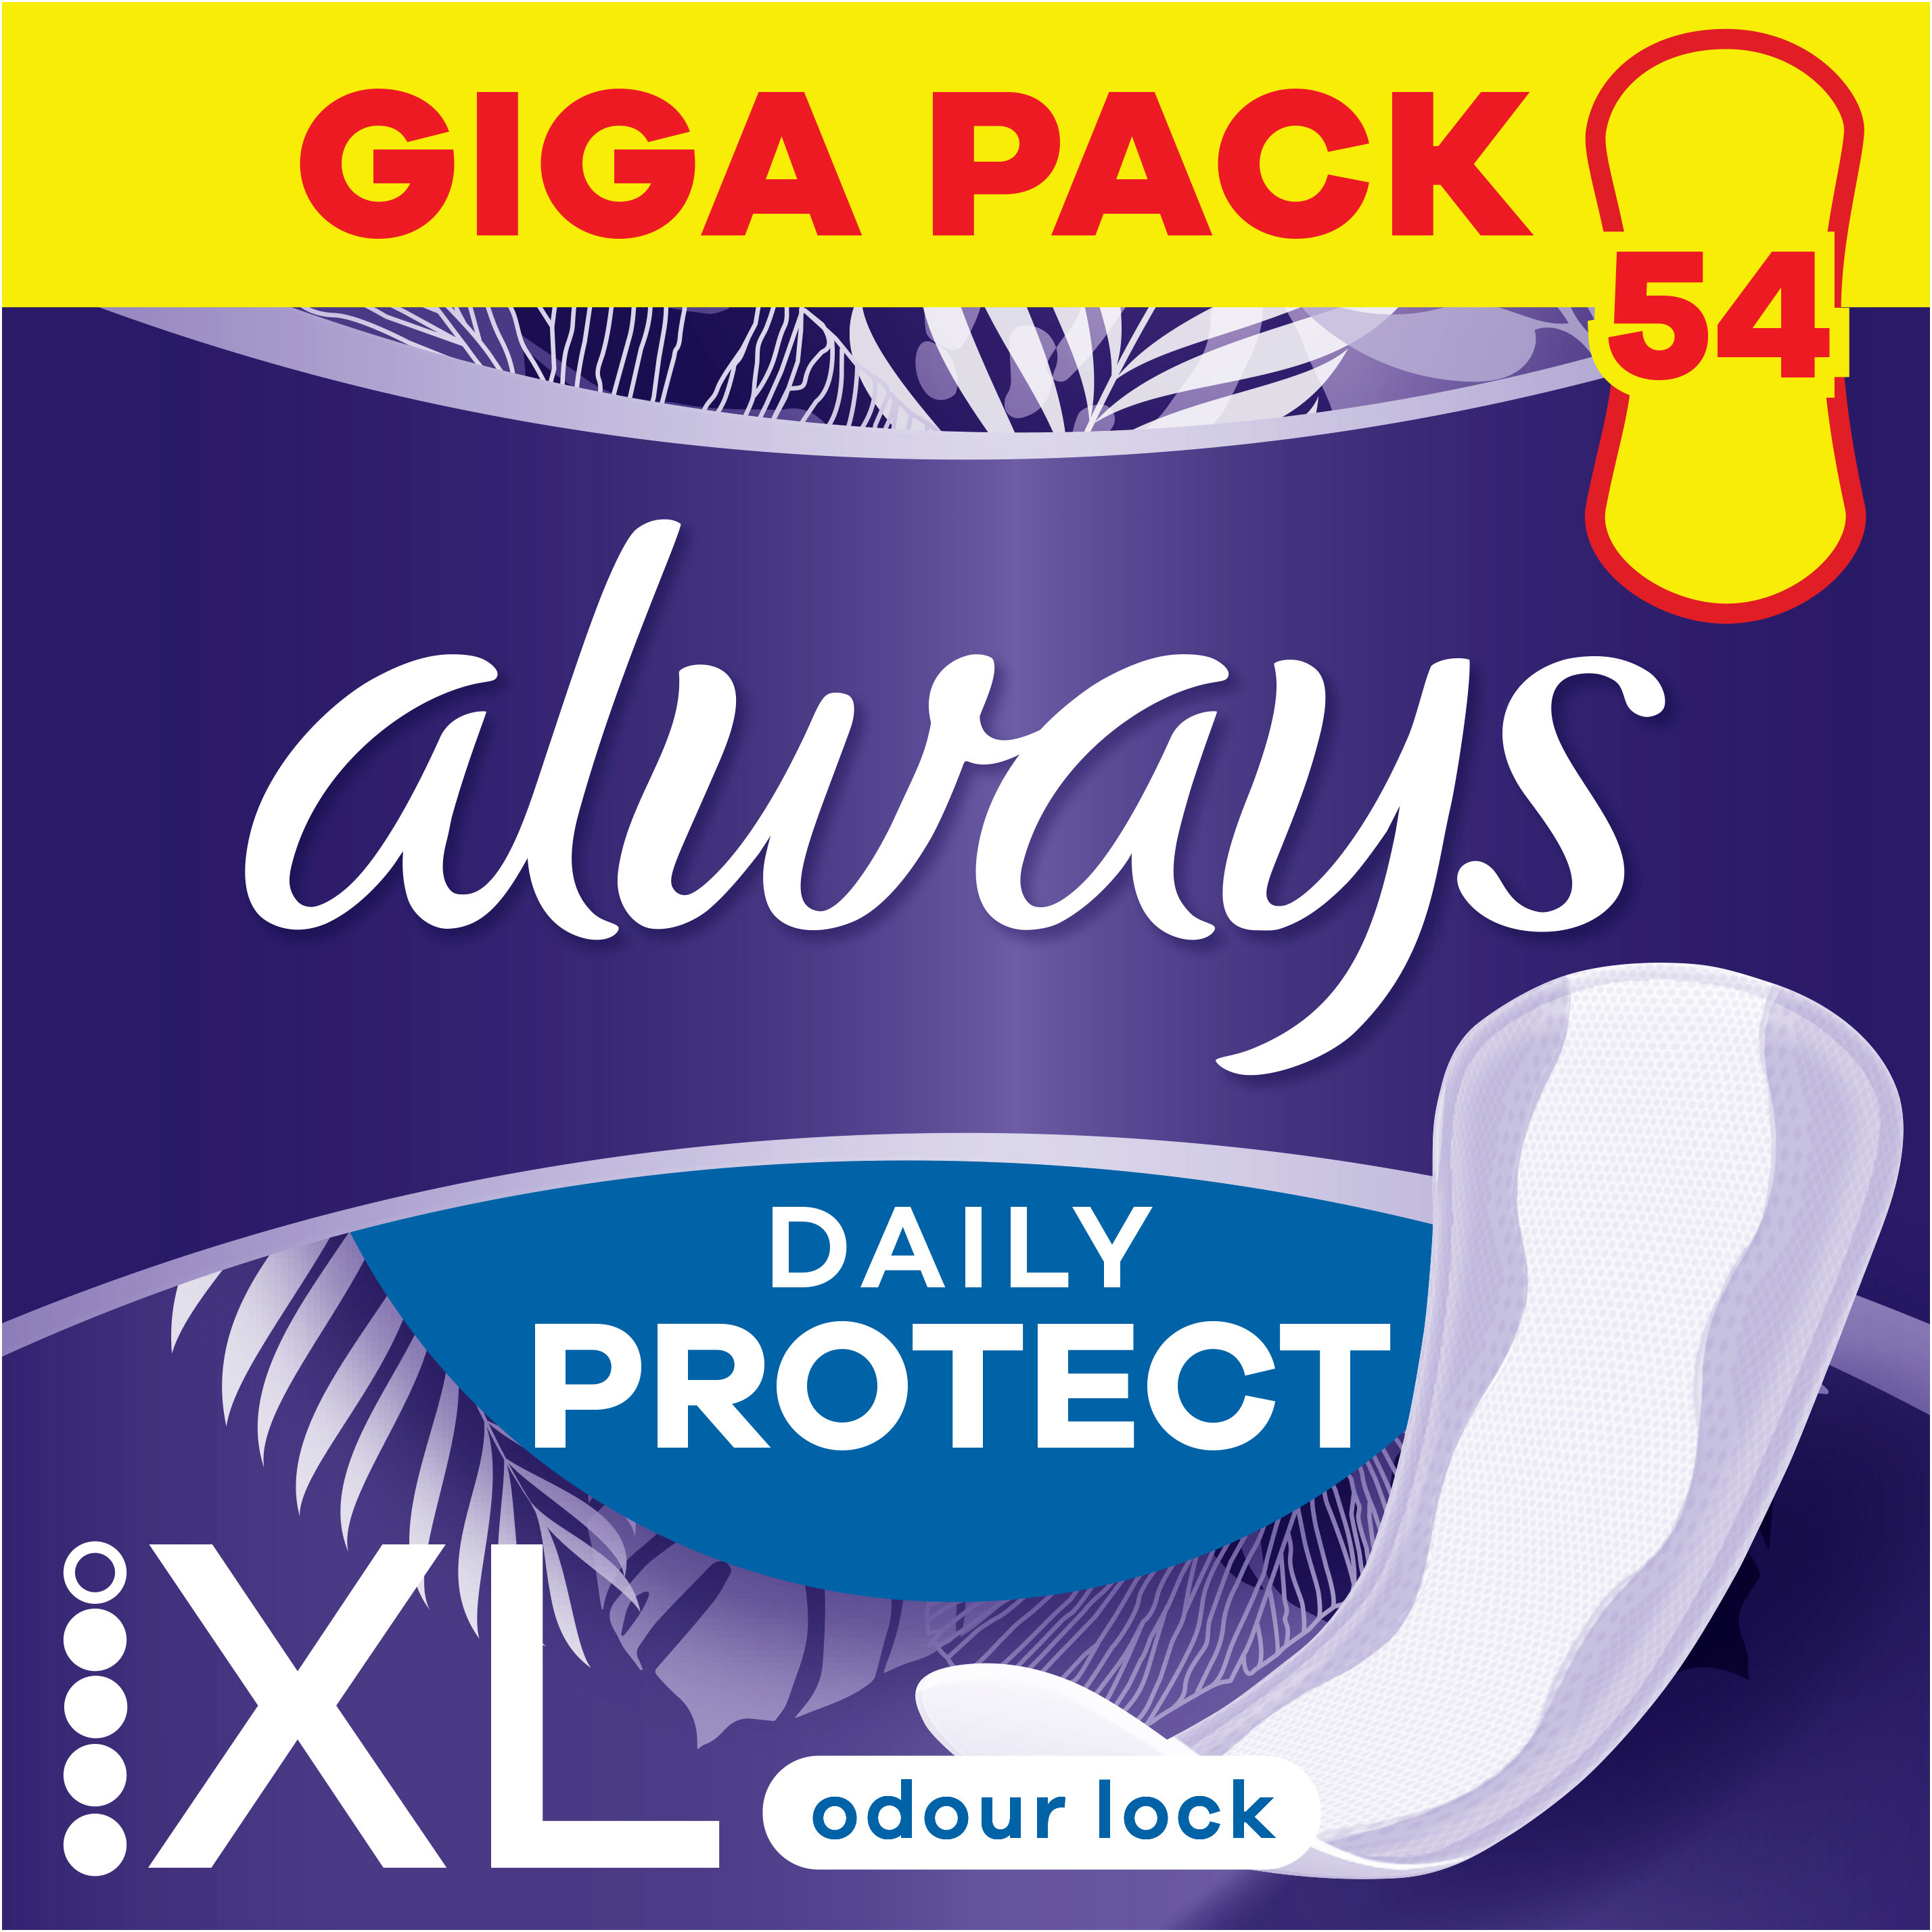 Прокладки гигиенические ежедневные Always Daily Protect ХL 54шт фото 1